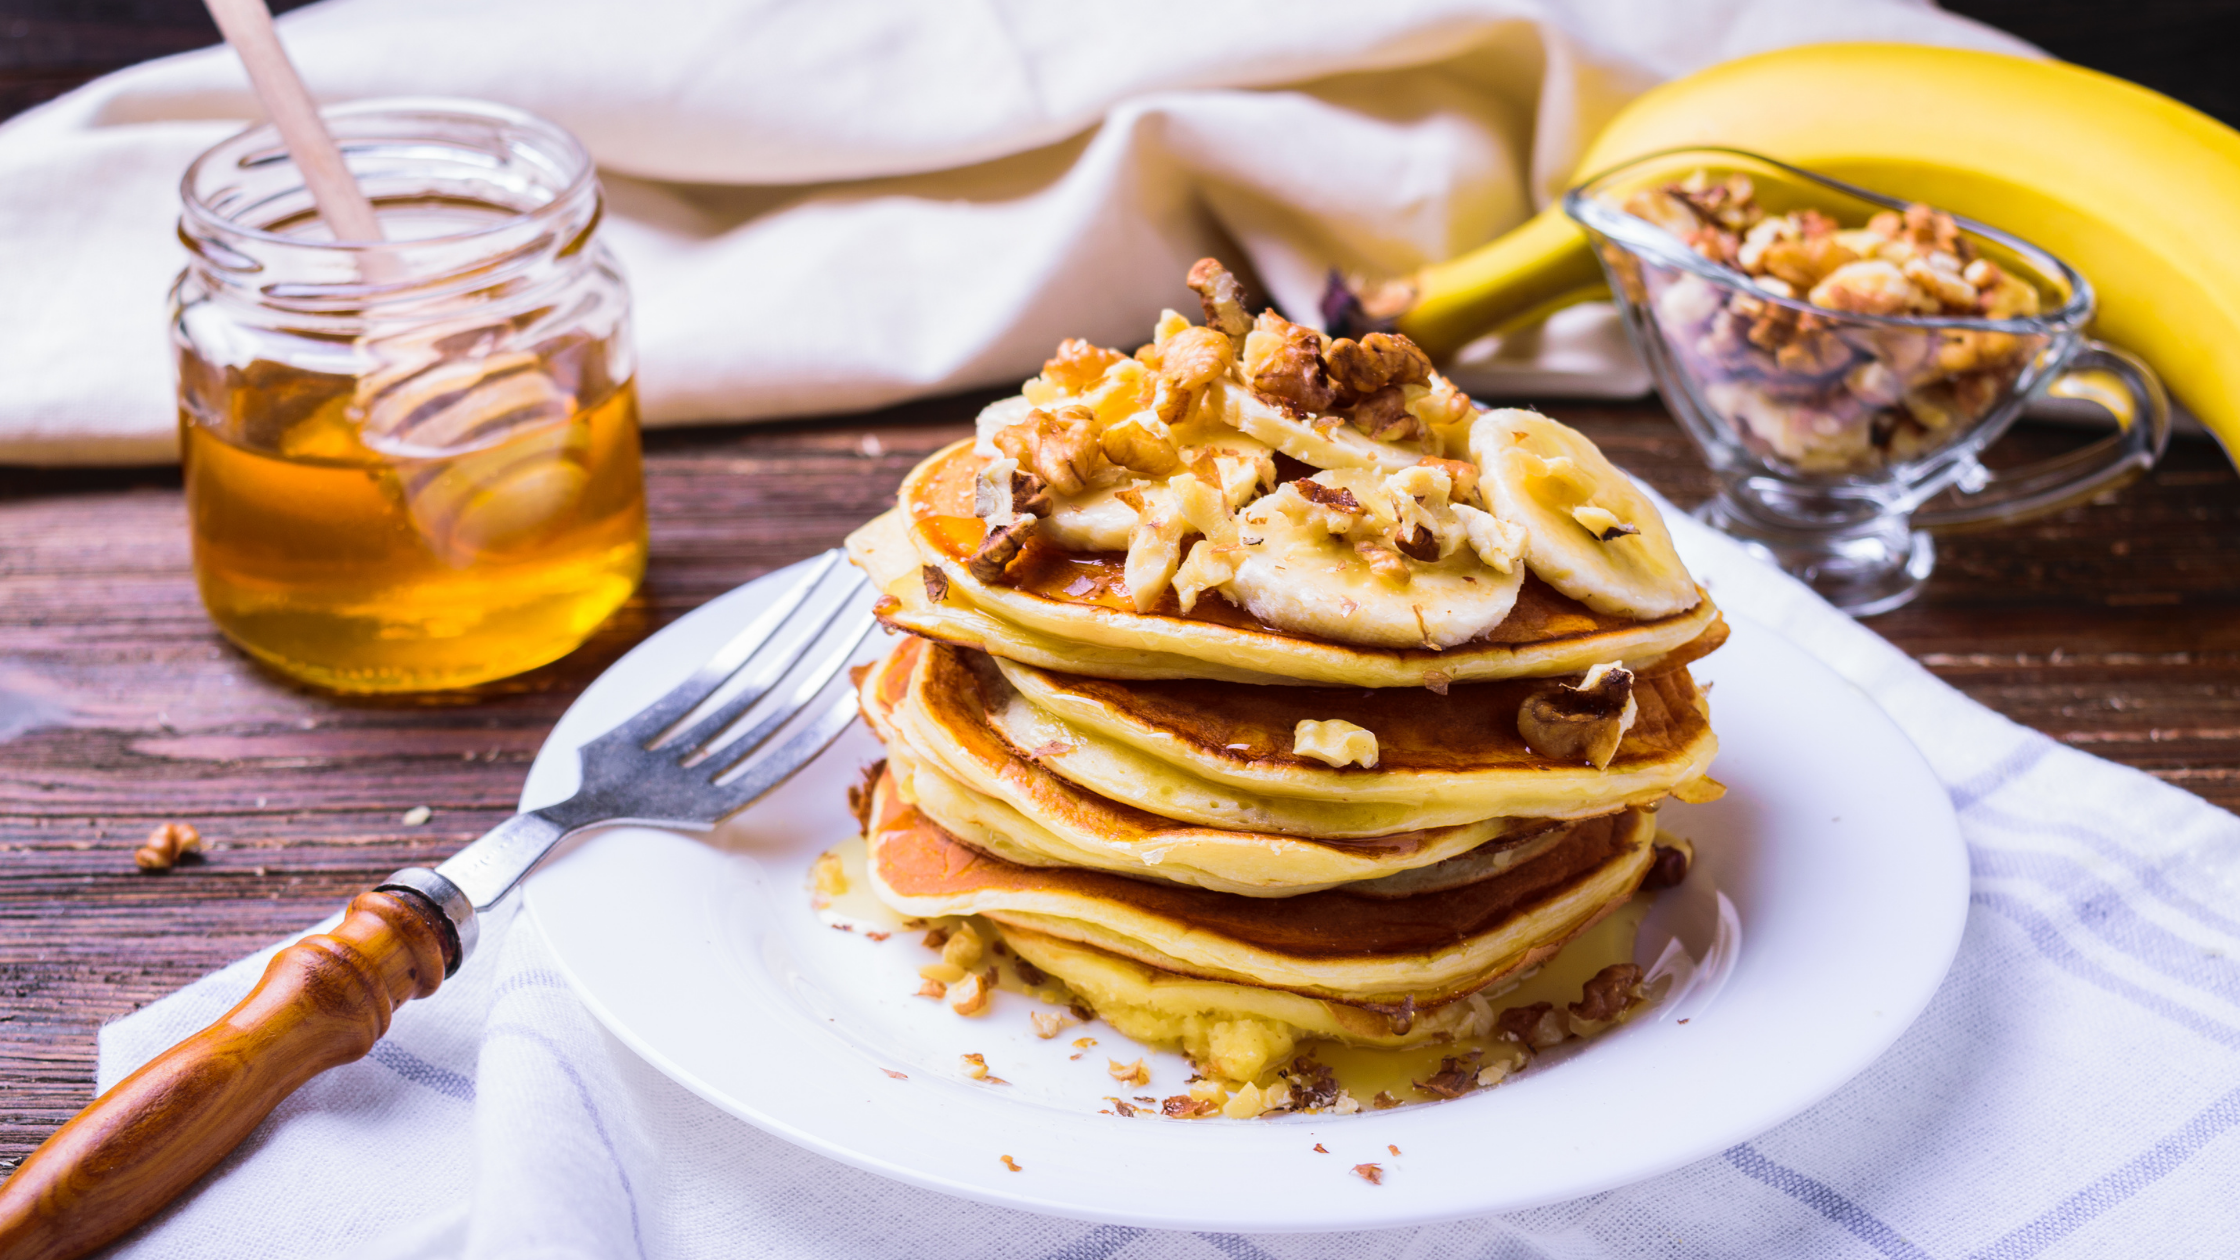 How To Make Healthier Banana Oatmeal Pancakes